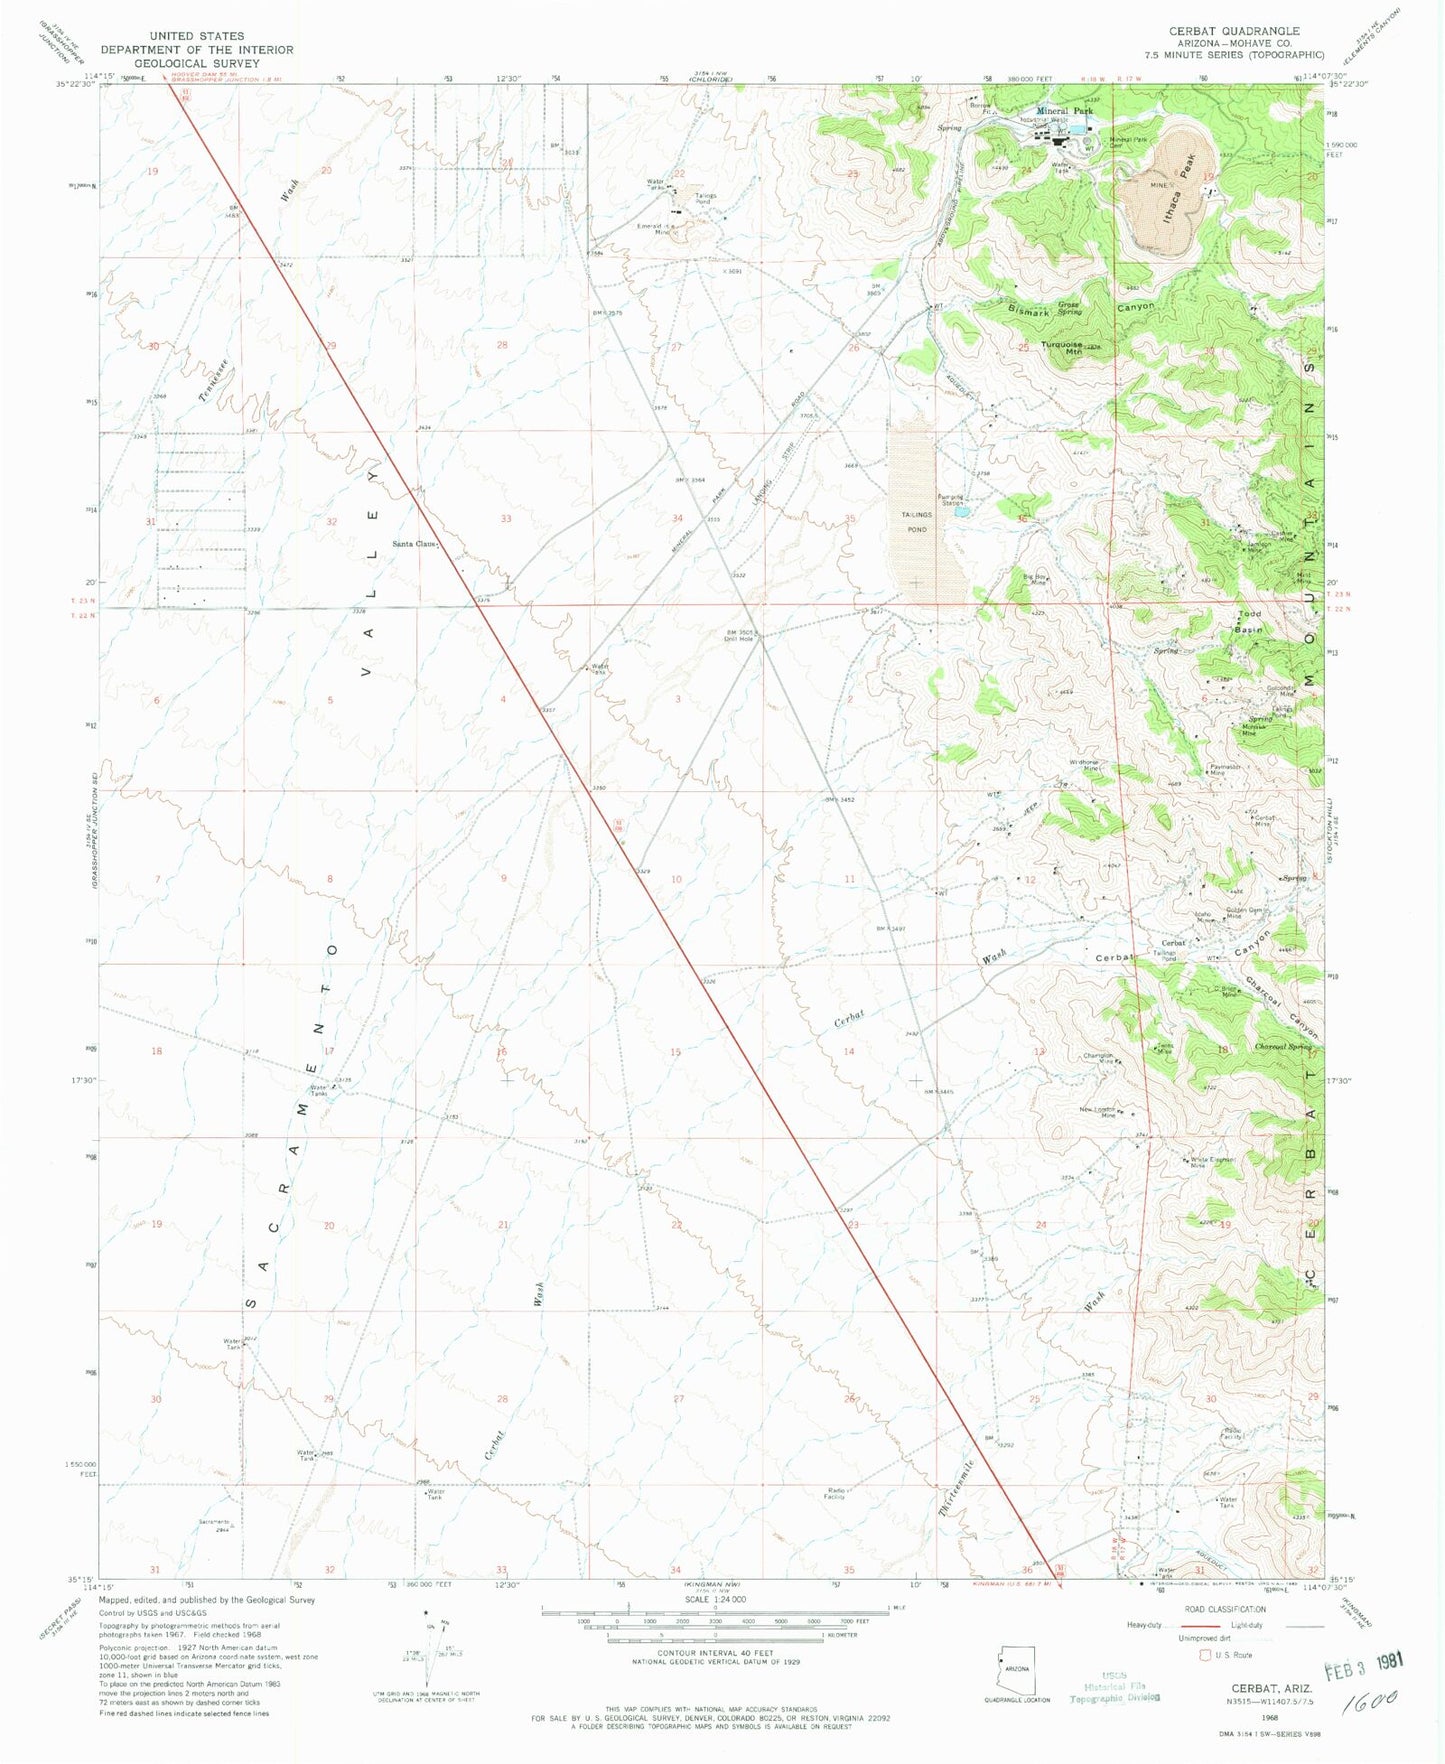 Classic USGS Cerbat Arizona 7.5'x7.5' Topo Map Image